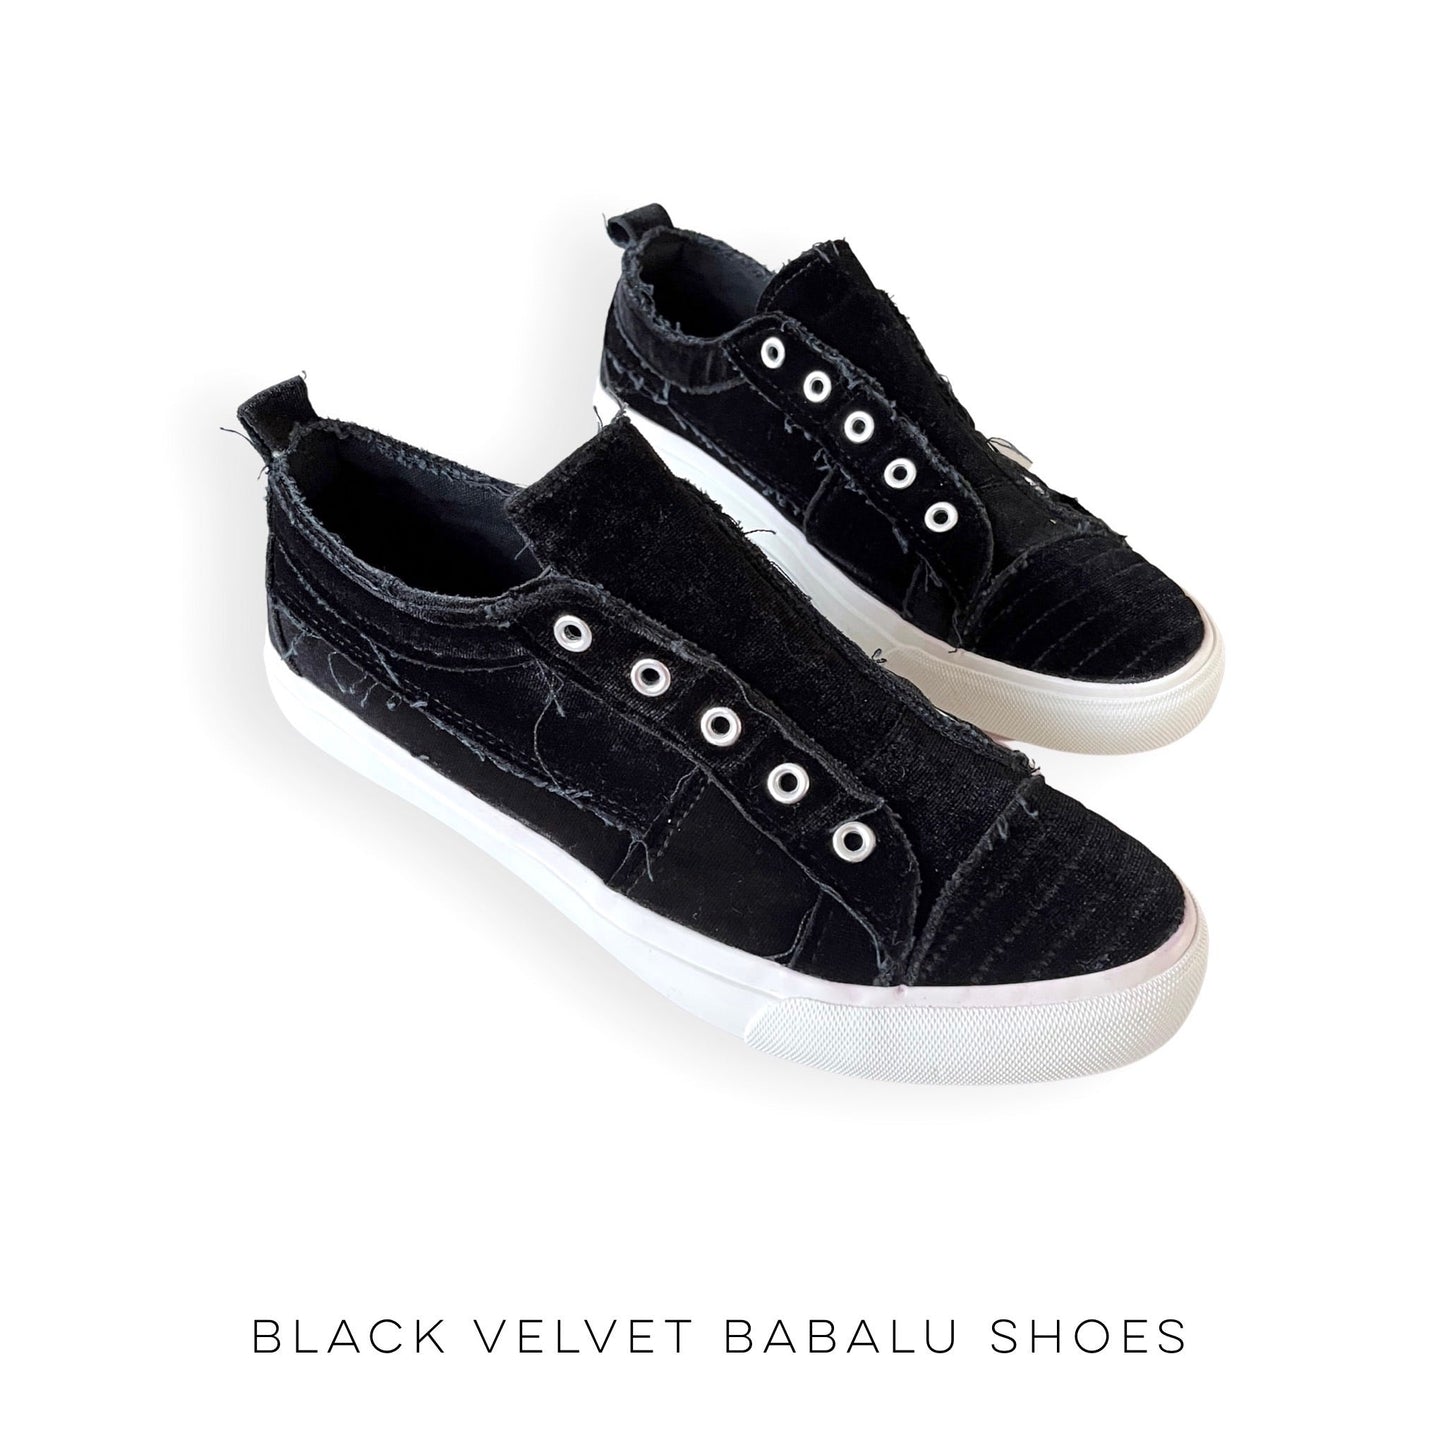 Black Velvet Babalu Shoes